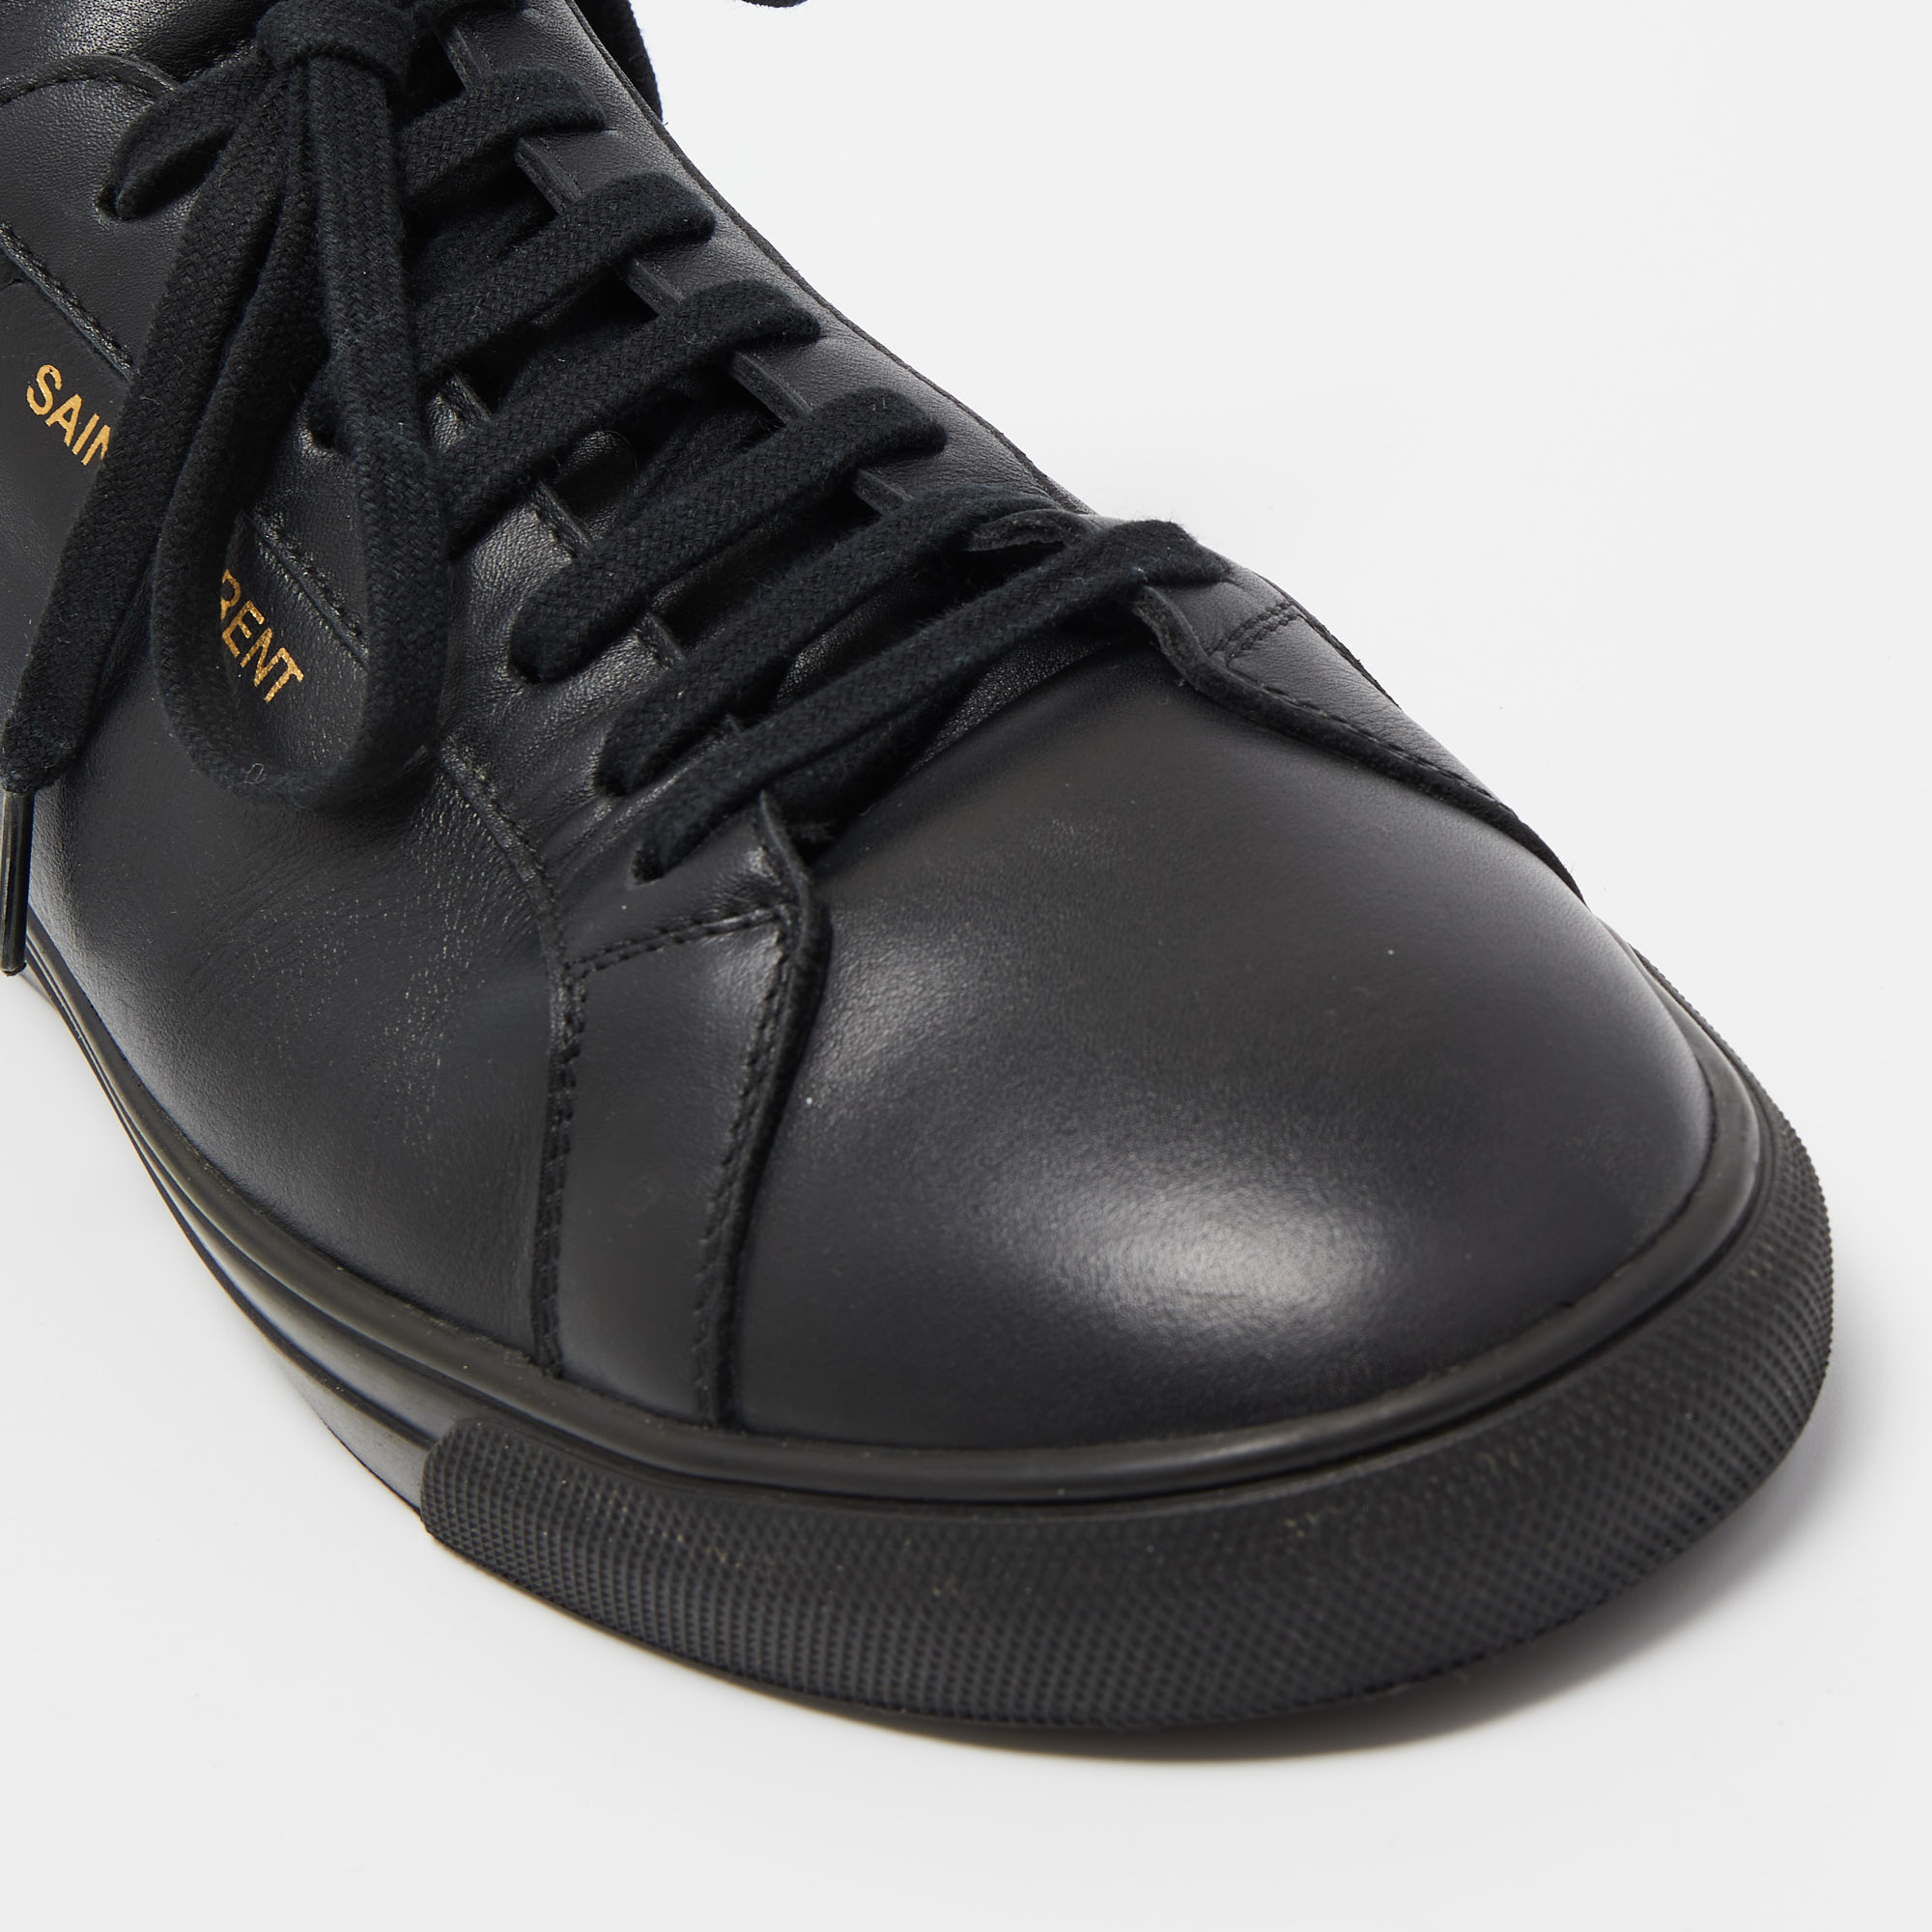 Saint Laurent Paris Black Leather Andy Low Top Sneakers Size 44